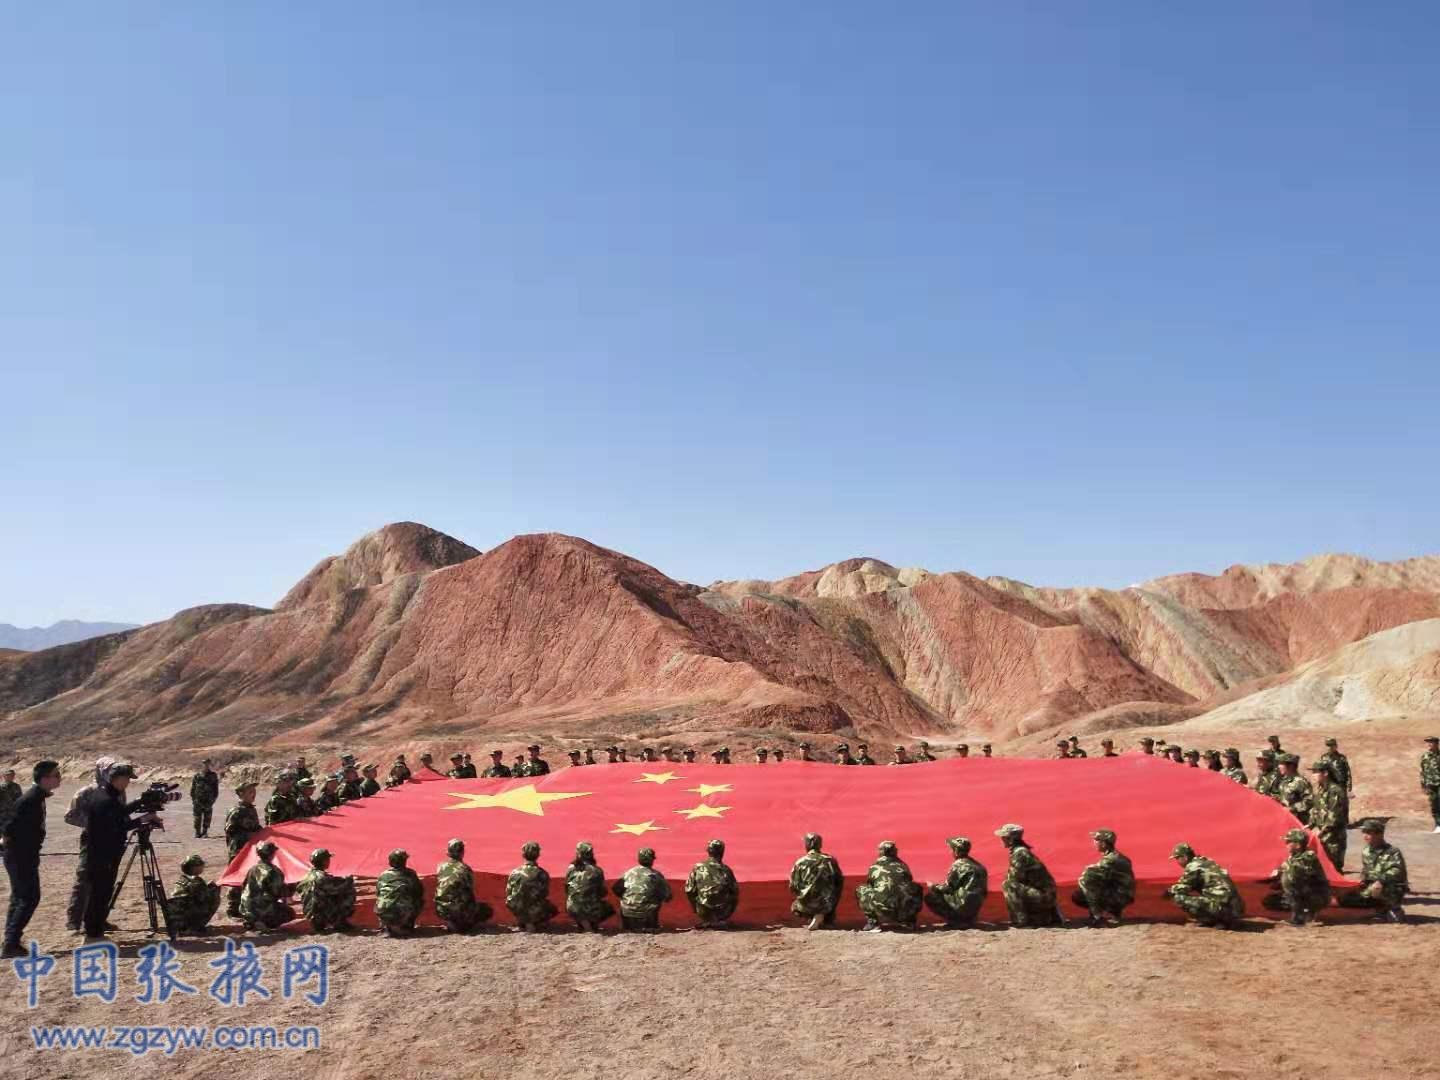 张掖地质公园2019“万名学生科普行” 题研学活动